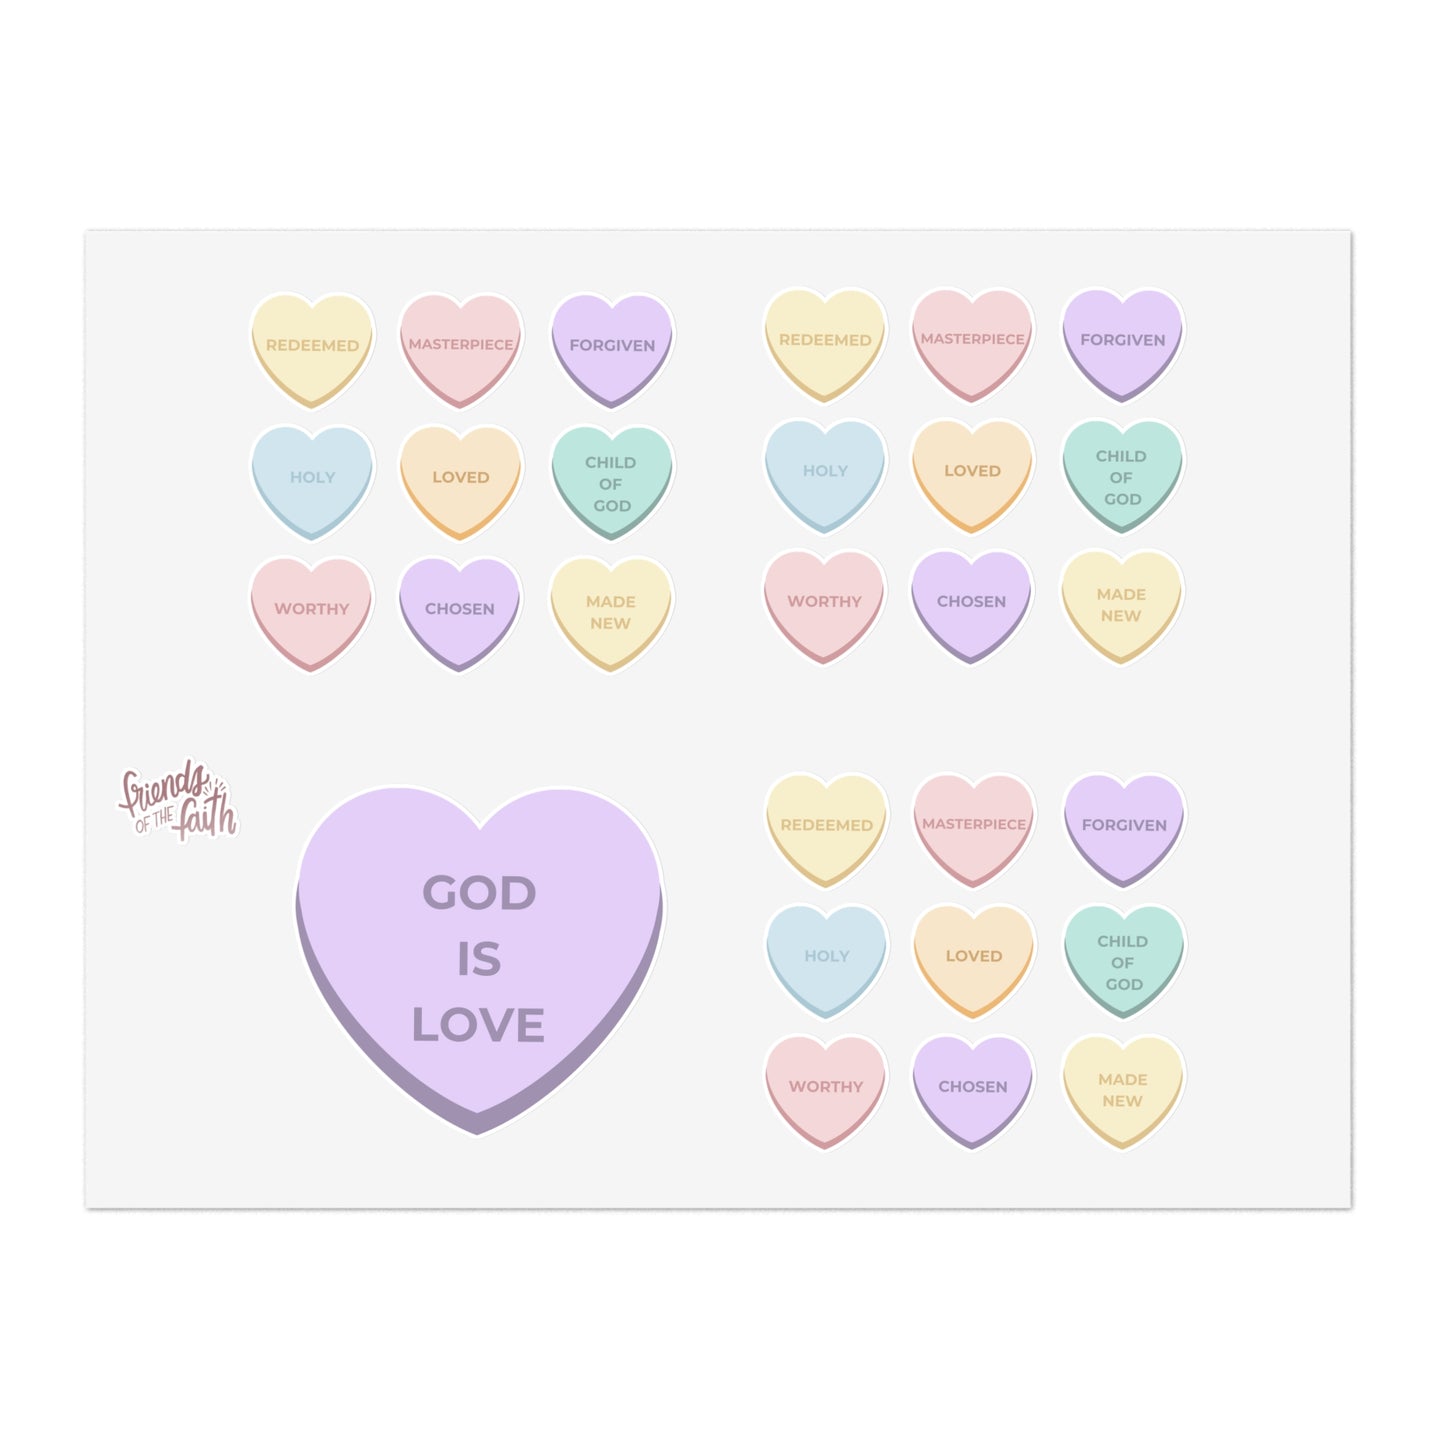 Valentine's Sticker Sheet